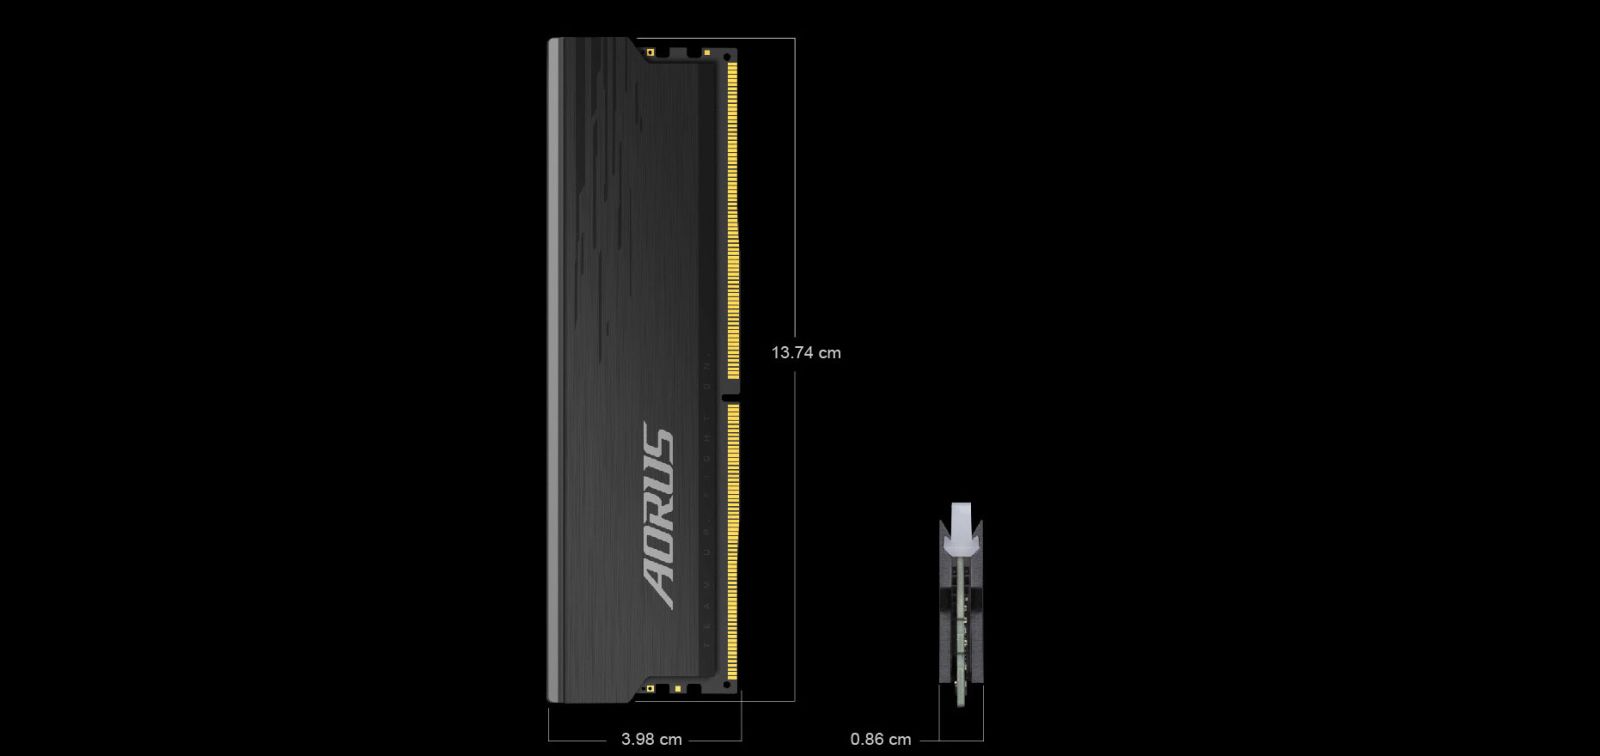 Gigabyte AORUS RGB Memory DDR4 3733MHz 16GB (2x8GB)